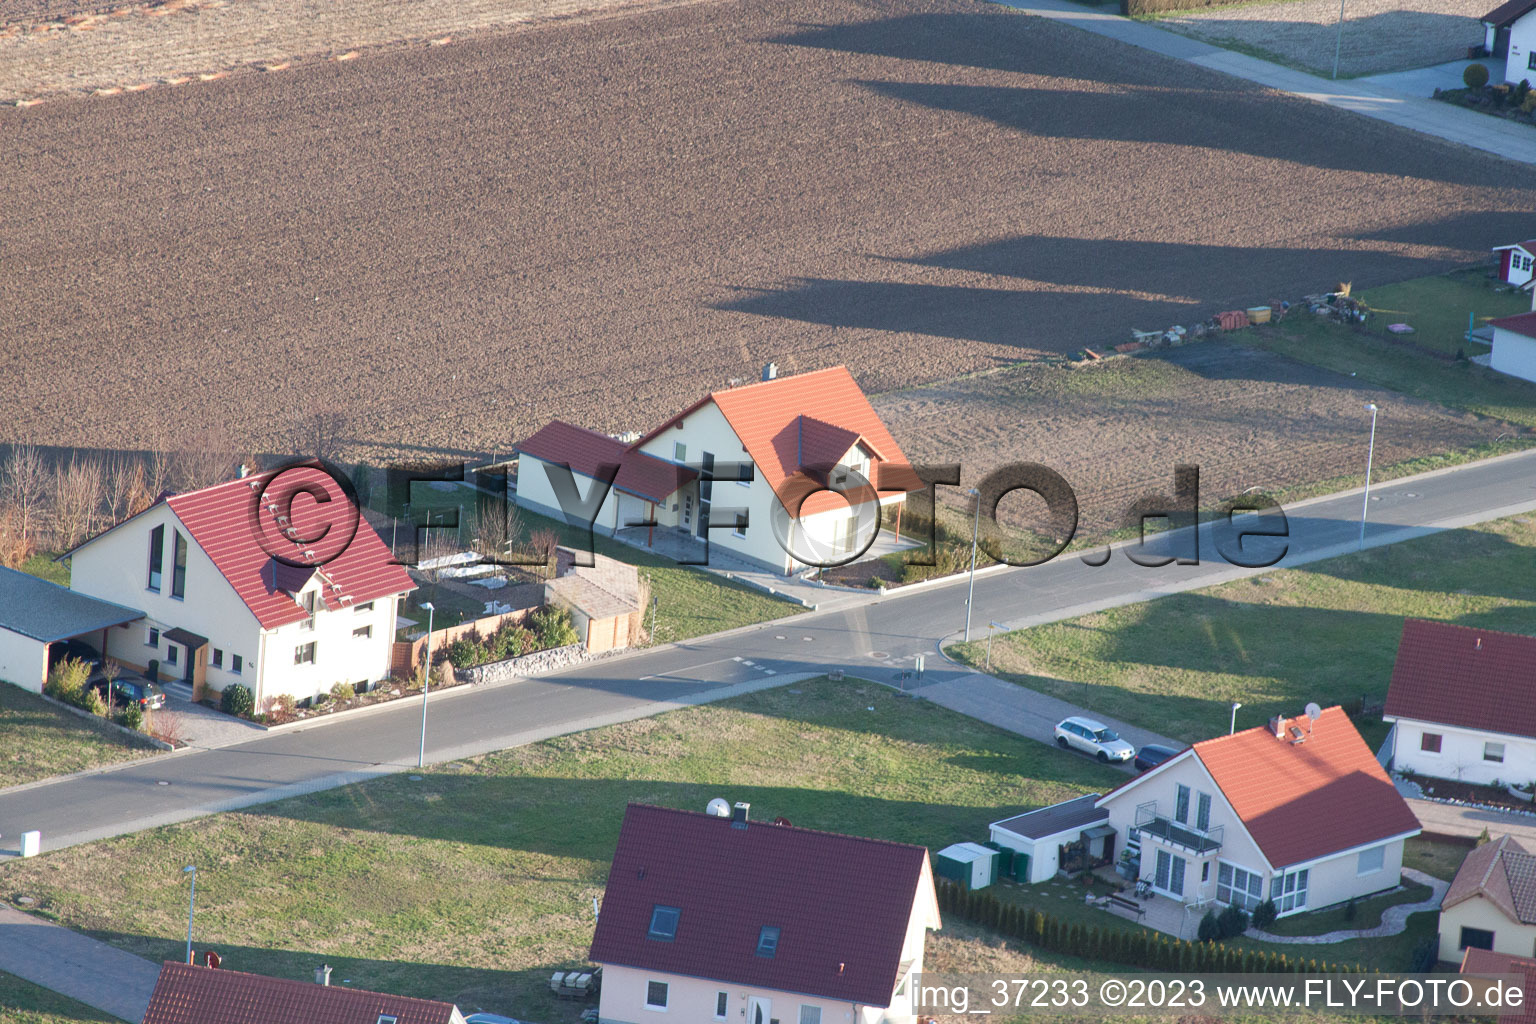 Bird's eye view of New development area NE in the district Schaidt in Wörth am Rhein in the state Rhineland-Palatinate, Germany